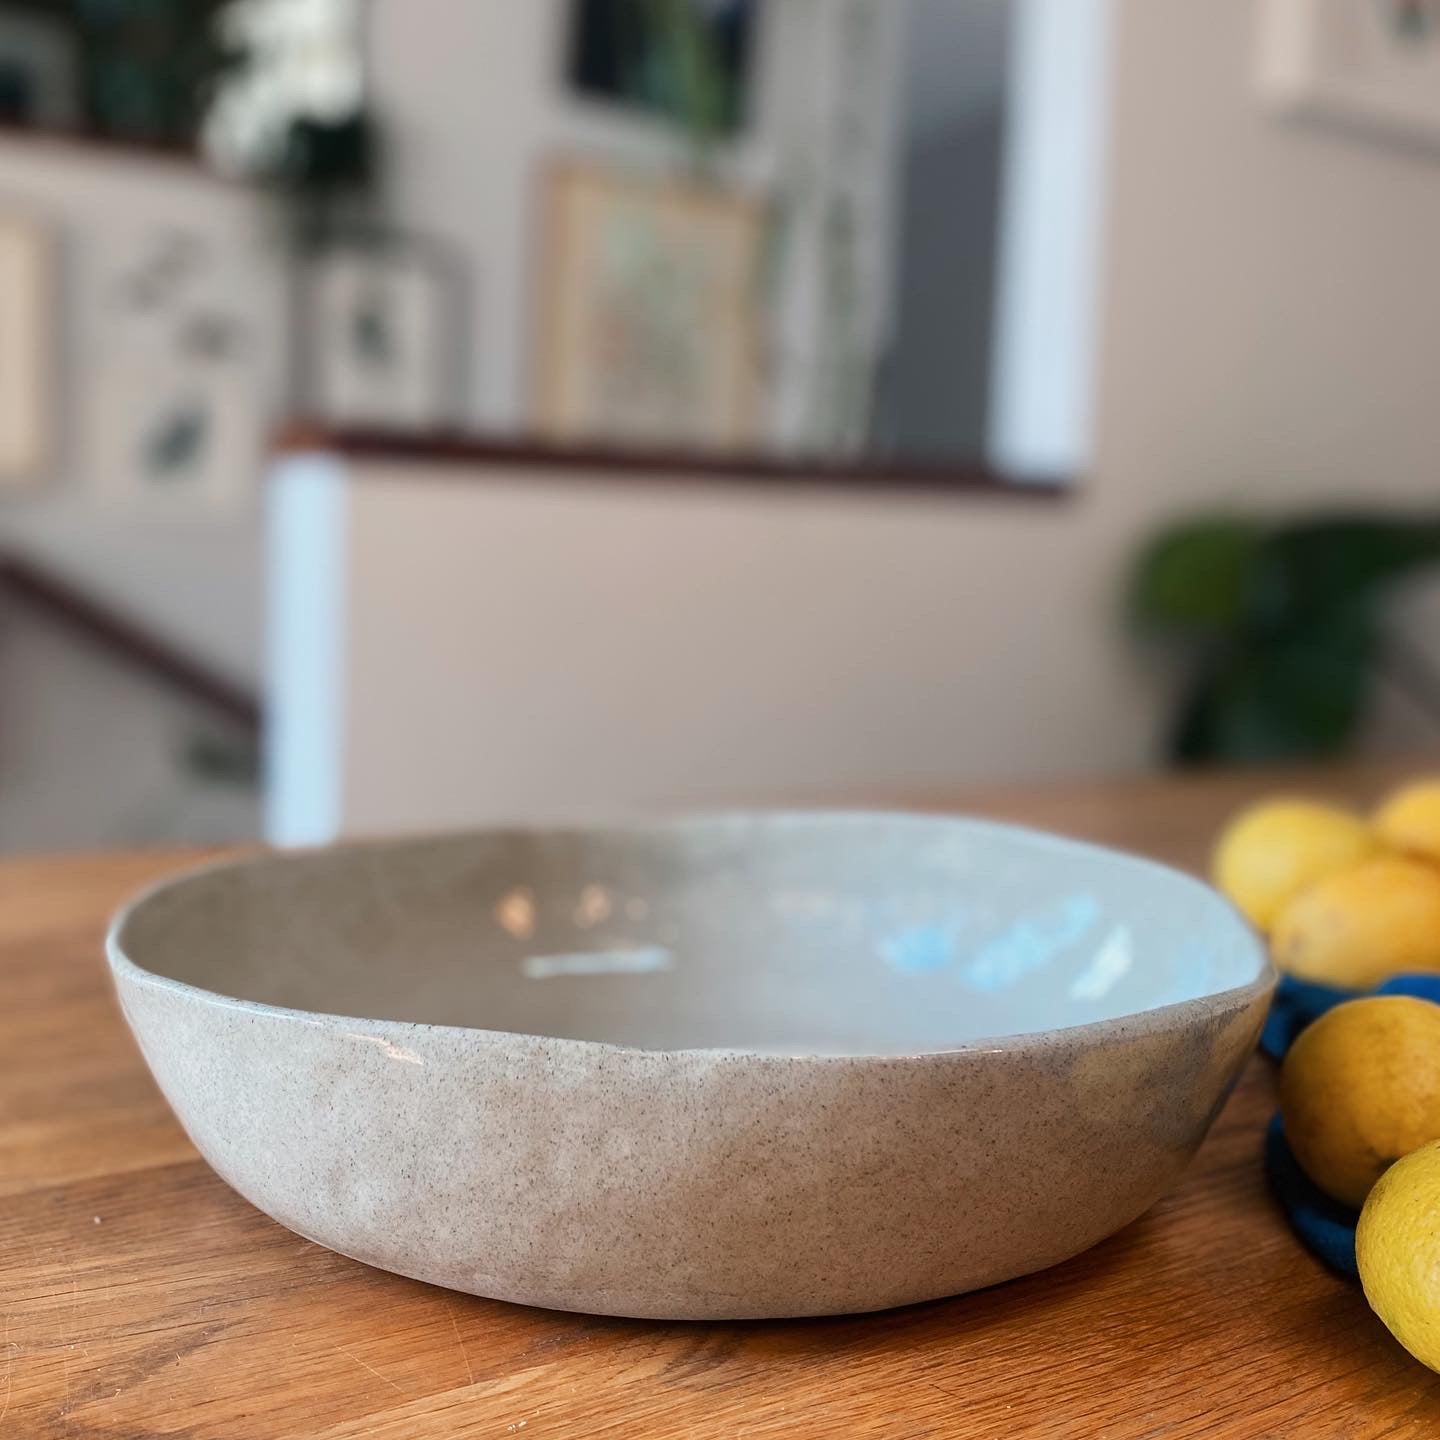 Large serving bowl - Sandstone